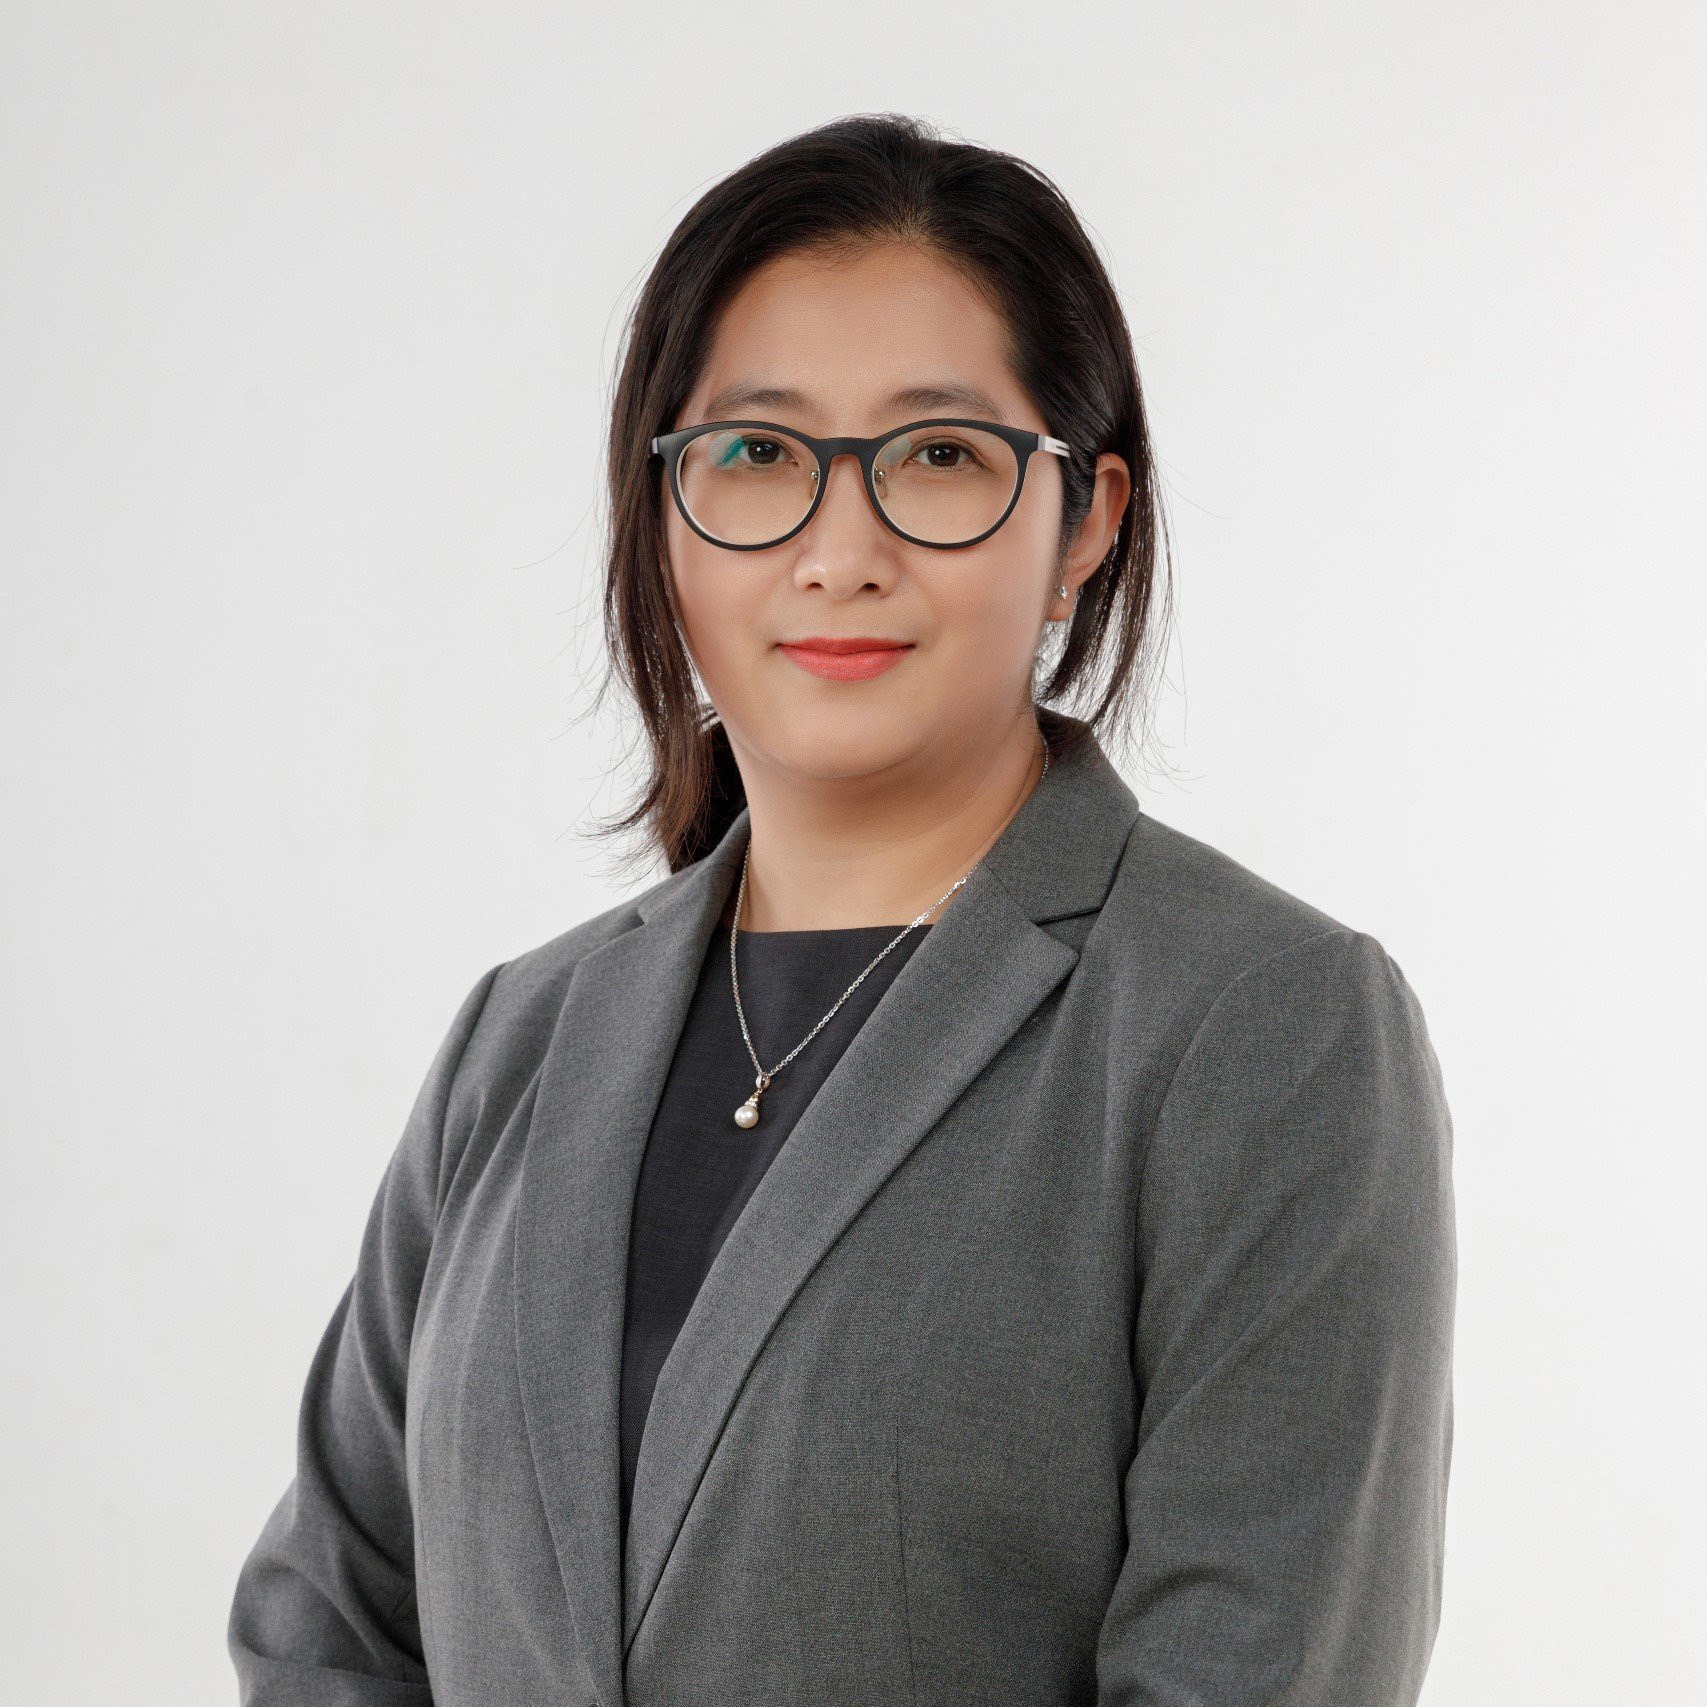 Tiana Nguyen